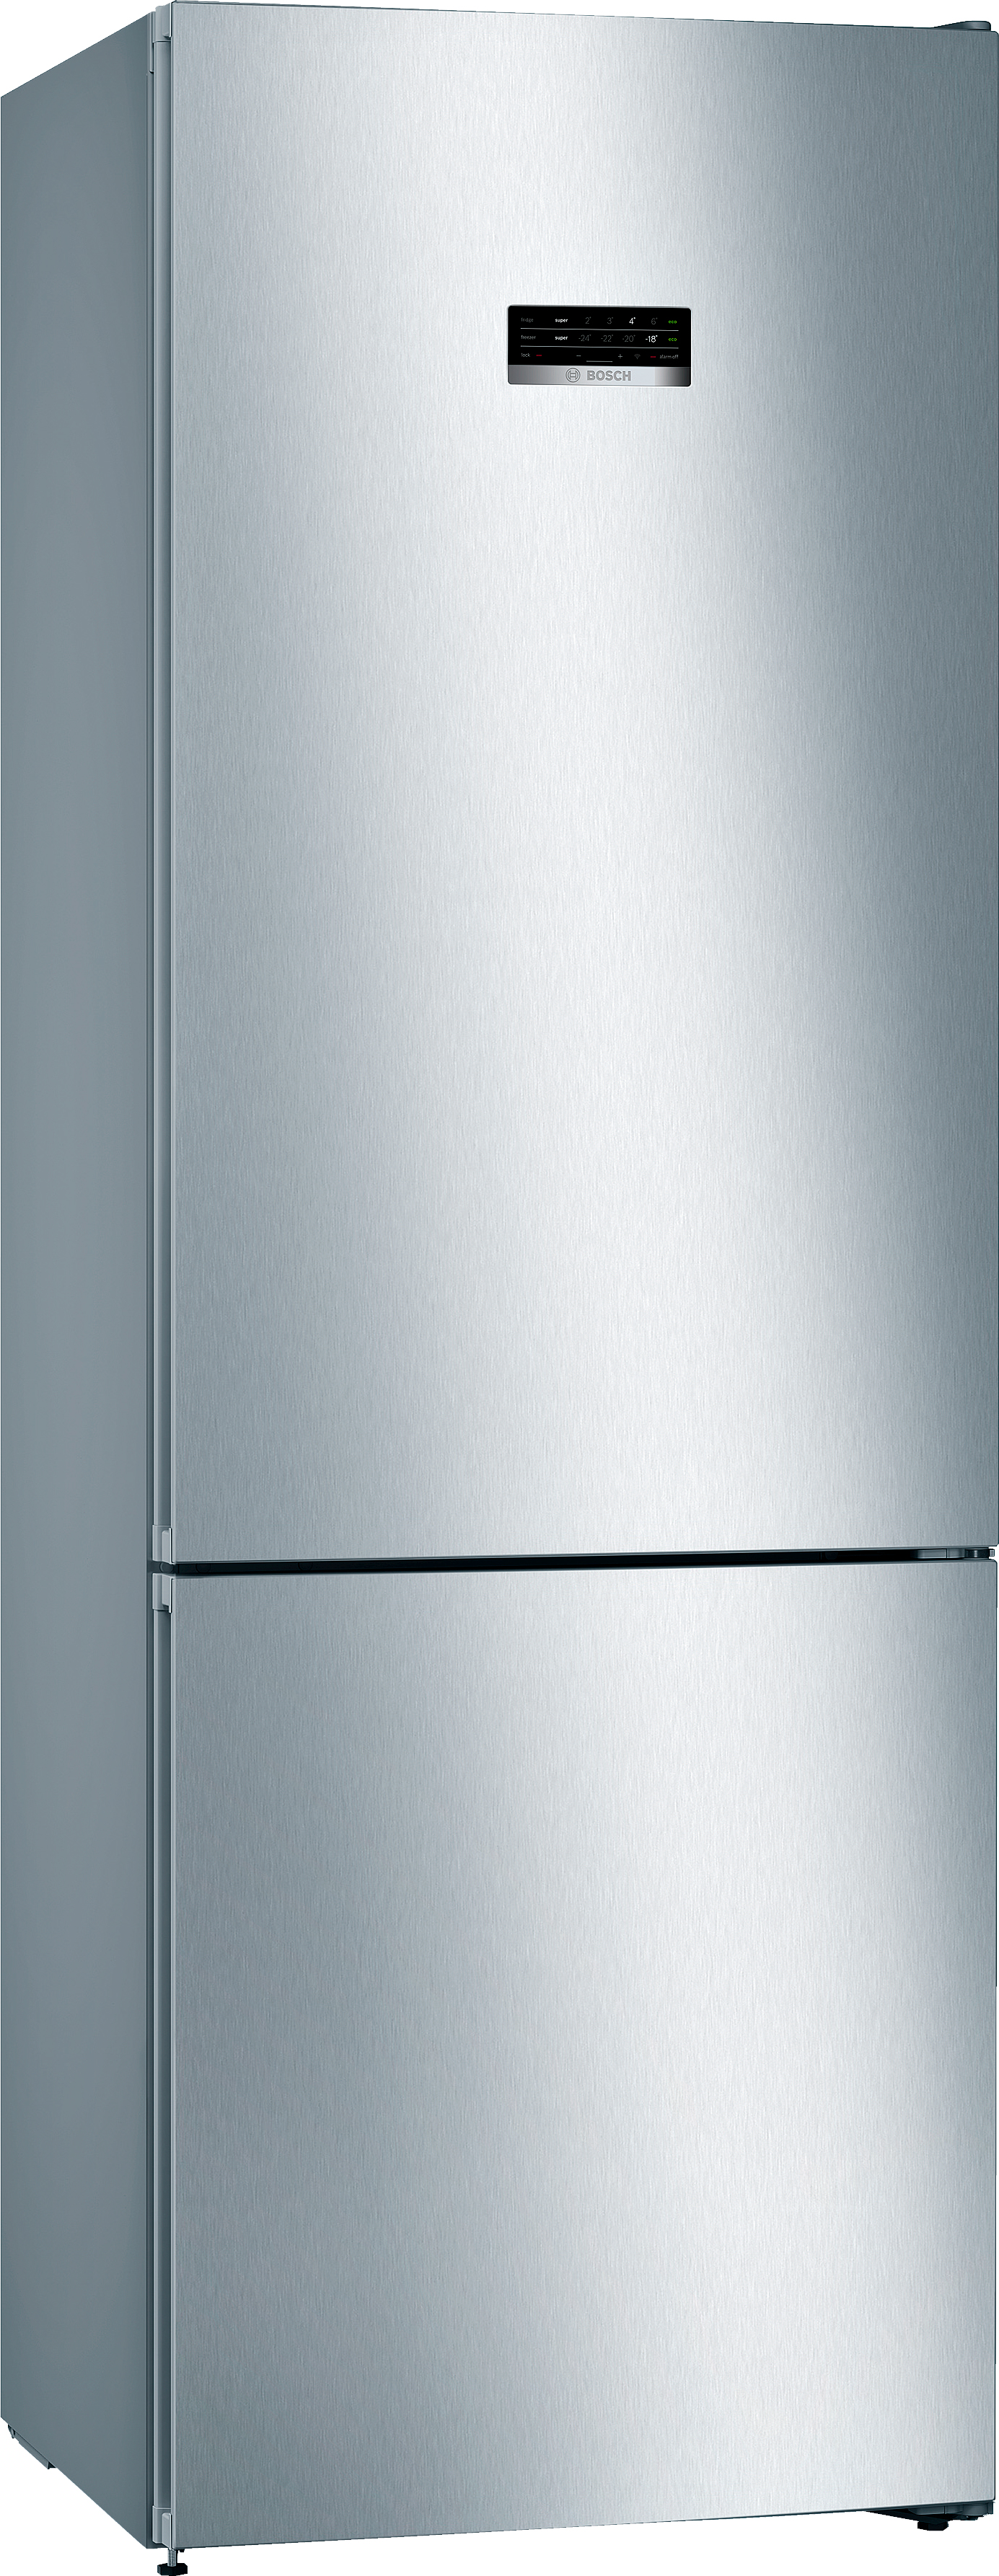 Холодильник Bosch KGN49XL306 в интернет-магазине, главное фото